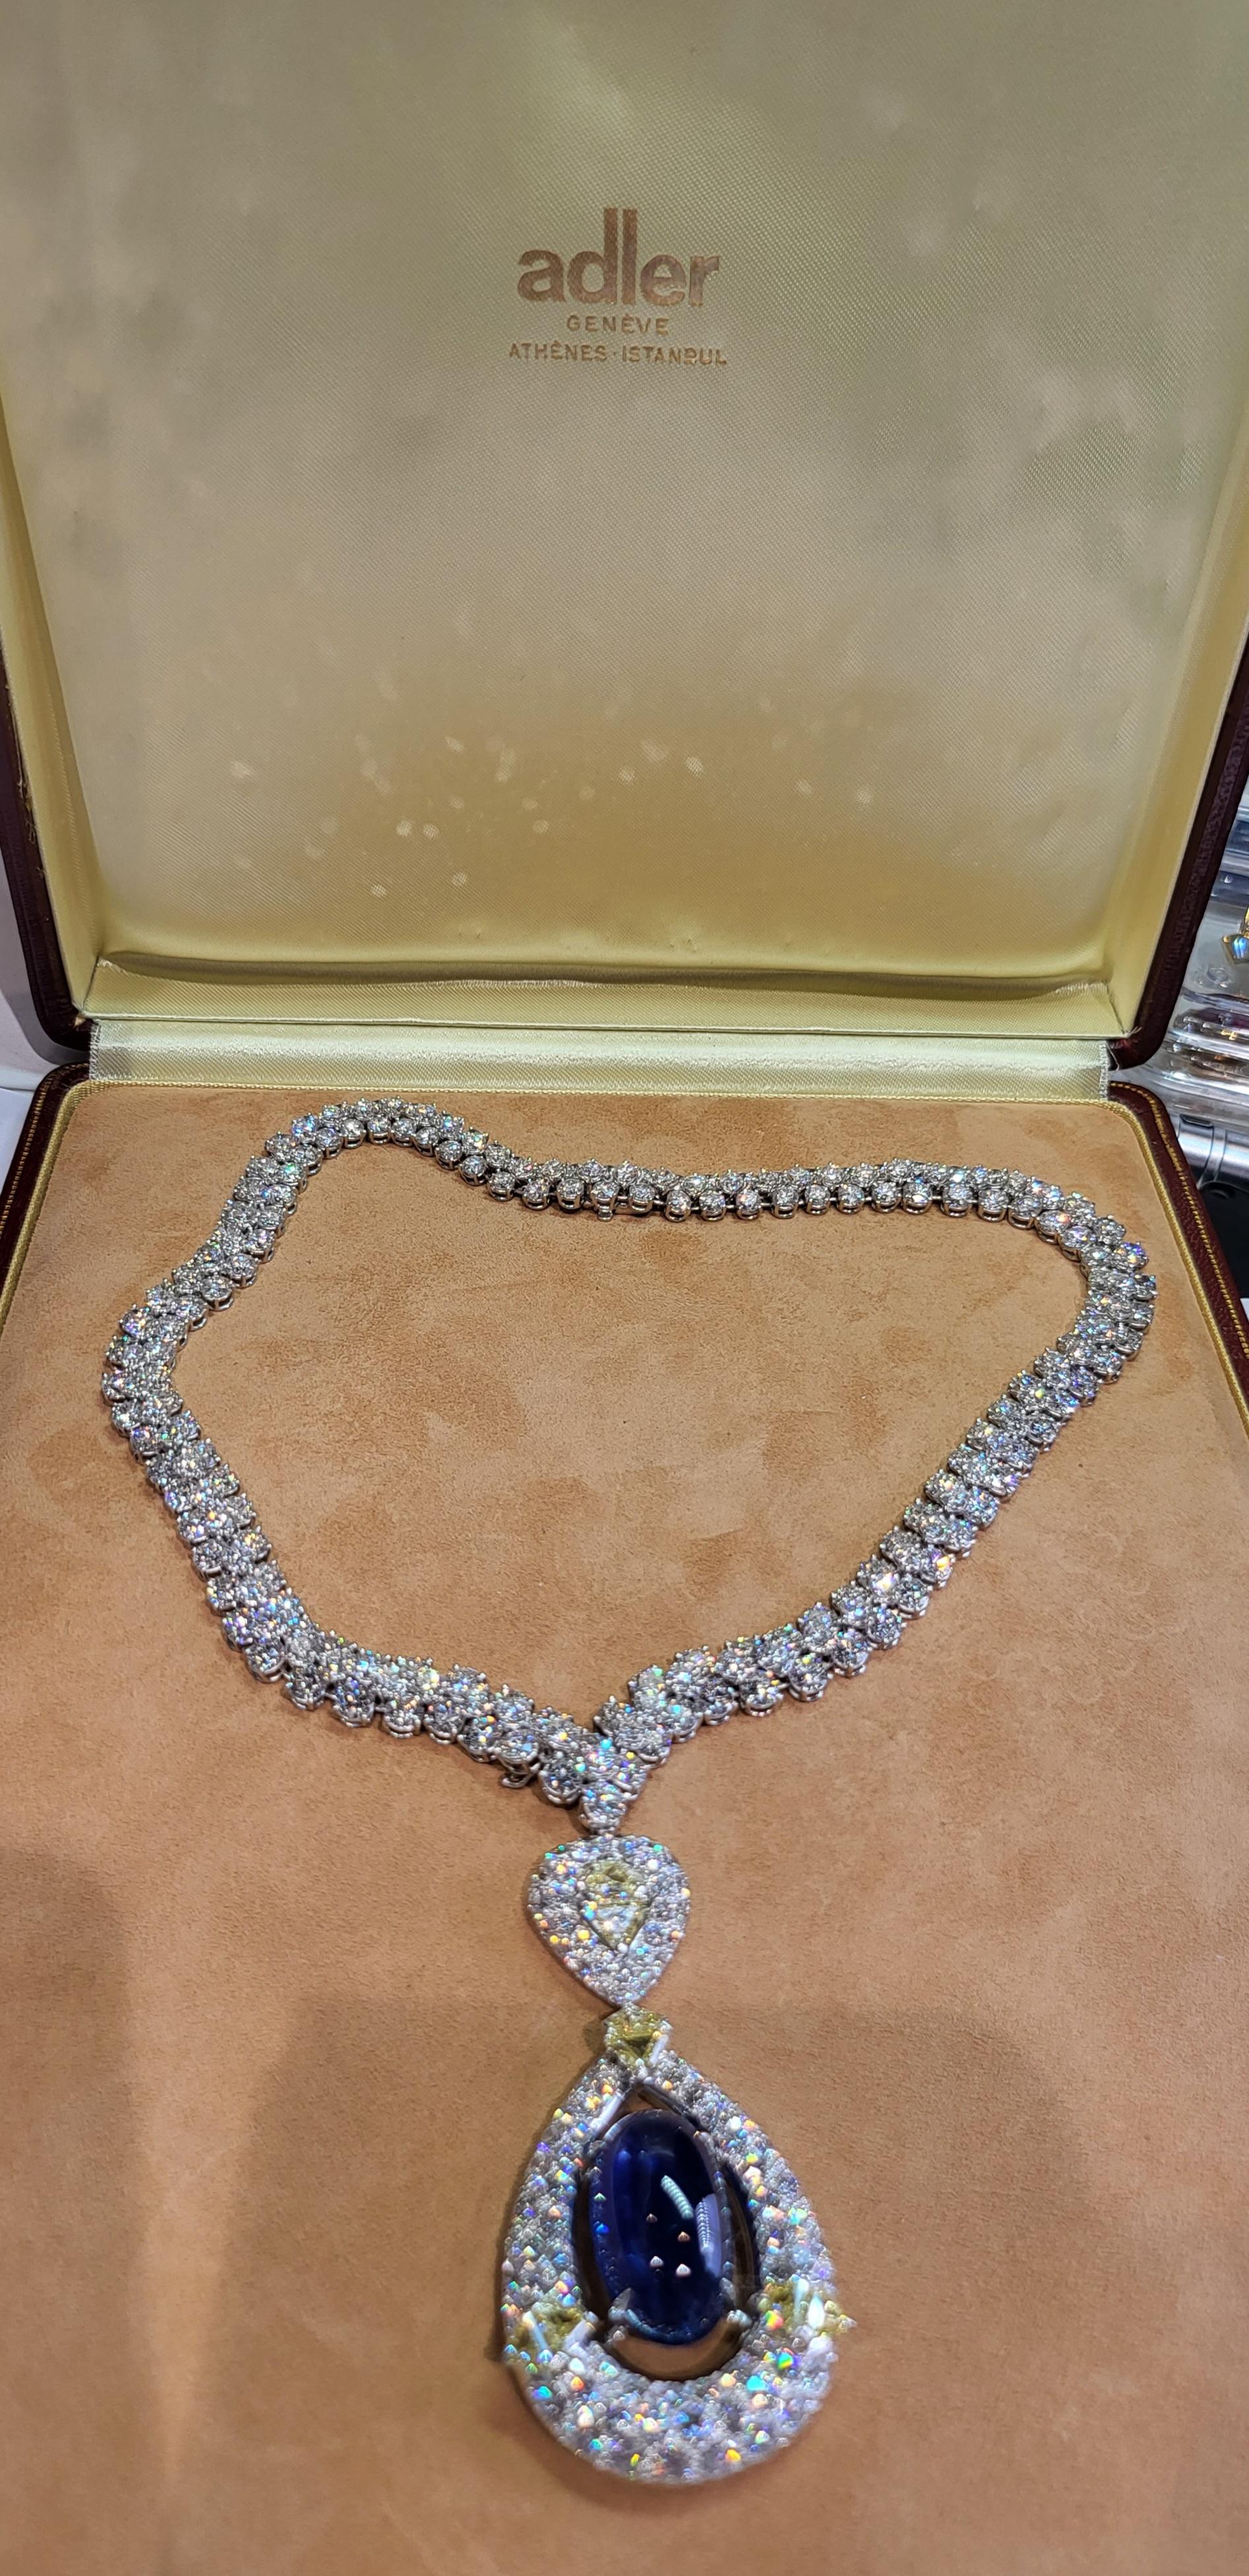 18 kt. Adler Genève Tennis Necklace & Asprey London Pendant Sapphire, Diamonds For Sale 14